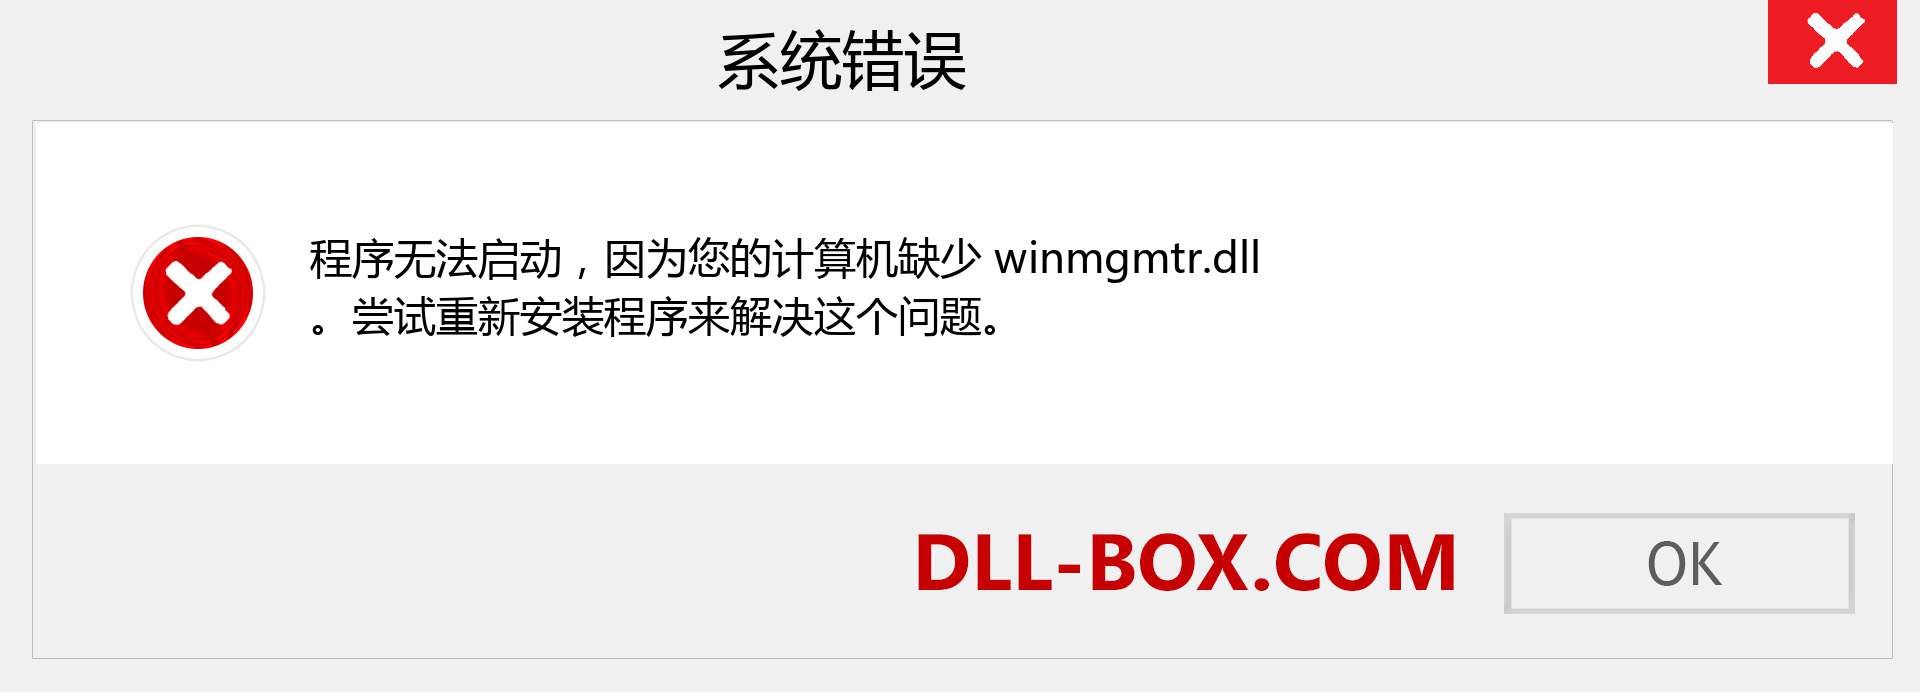 winmgmtr.dll 文件丢失？。 适用于 Windows 7、8、10 的下载 - 修复 Windows、照片、图像上的 winmgmtr dll 丢失错误